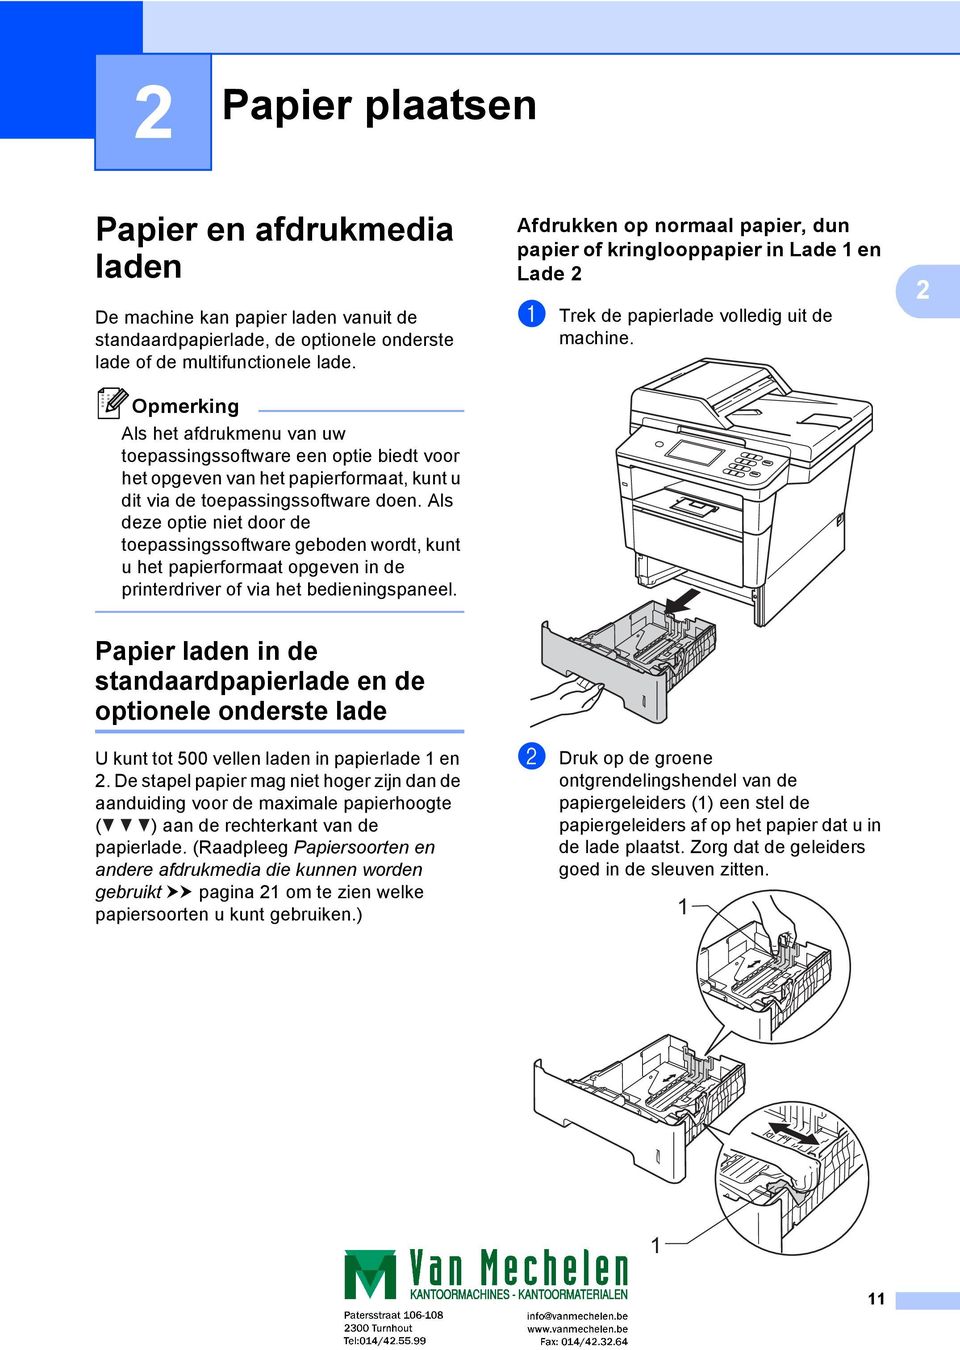 Als deze optie niet door de toepassingssoftware geboden wordt, kunt u het papierformaat opgeven in de printerdriver of via het bedieningspaneel.